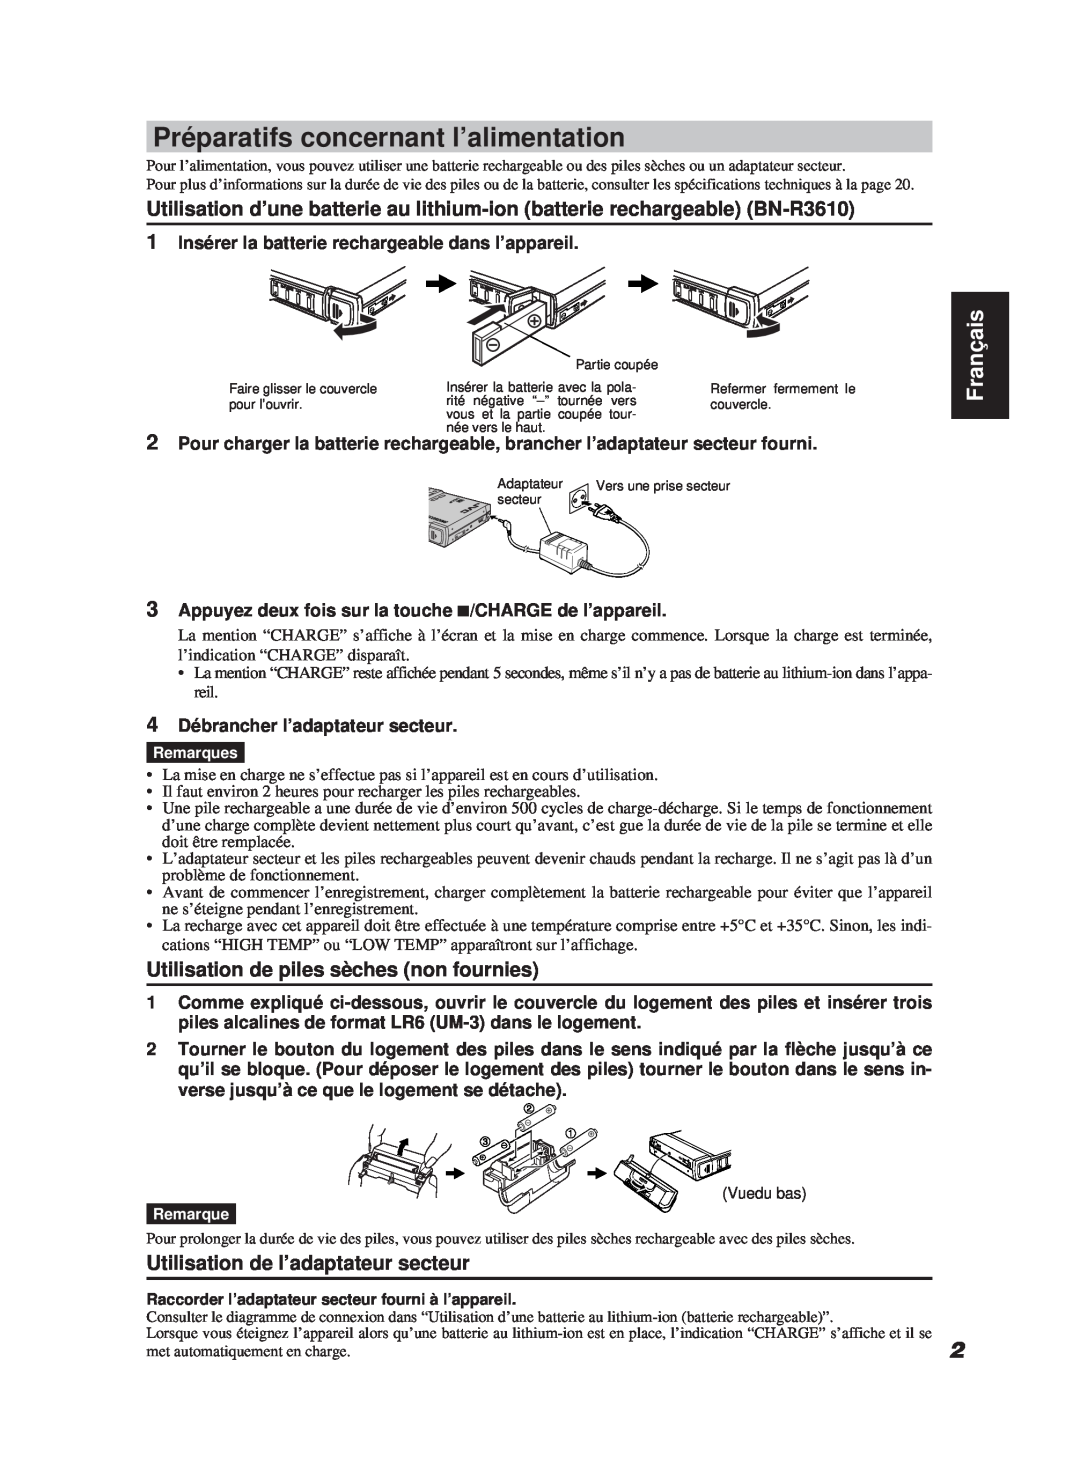 JVC XM-R700SL manual Préparatifs concernant l’alimentation, Utilisation de piles sèches non fournies, Français 